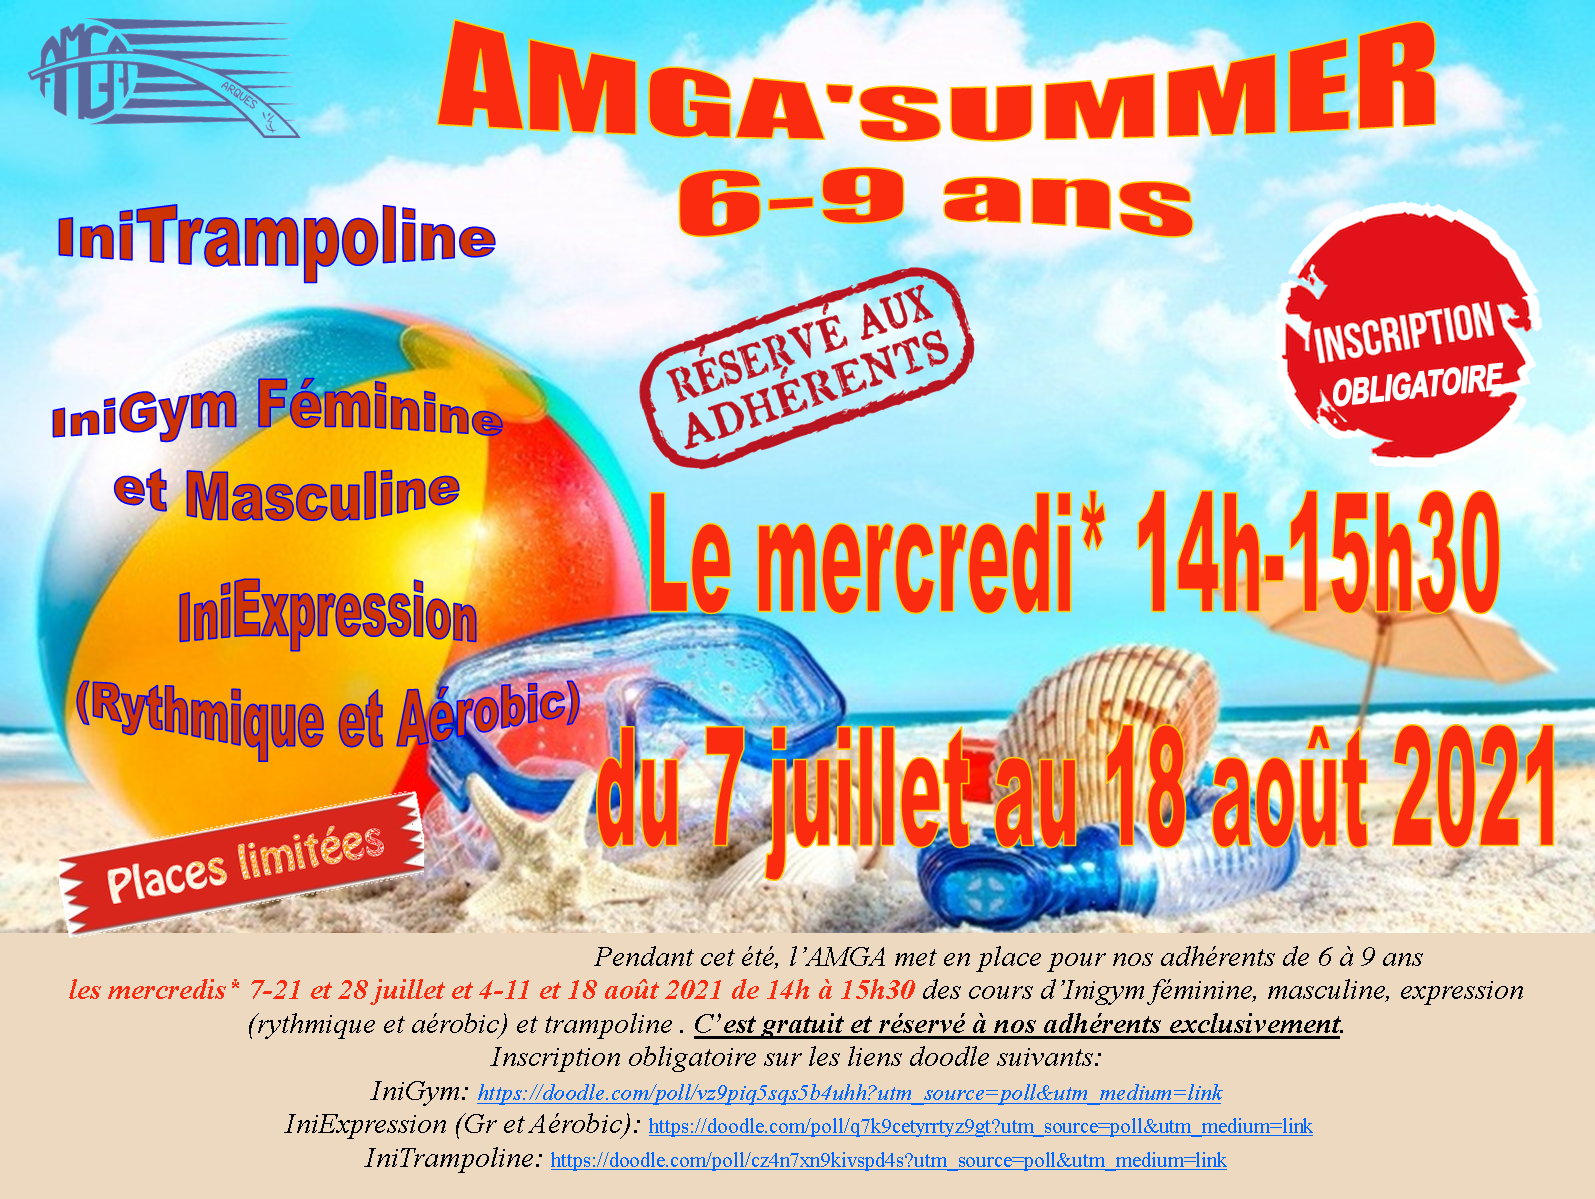 AMGA'Summer 6-9 ans